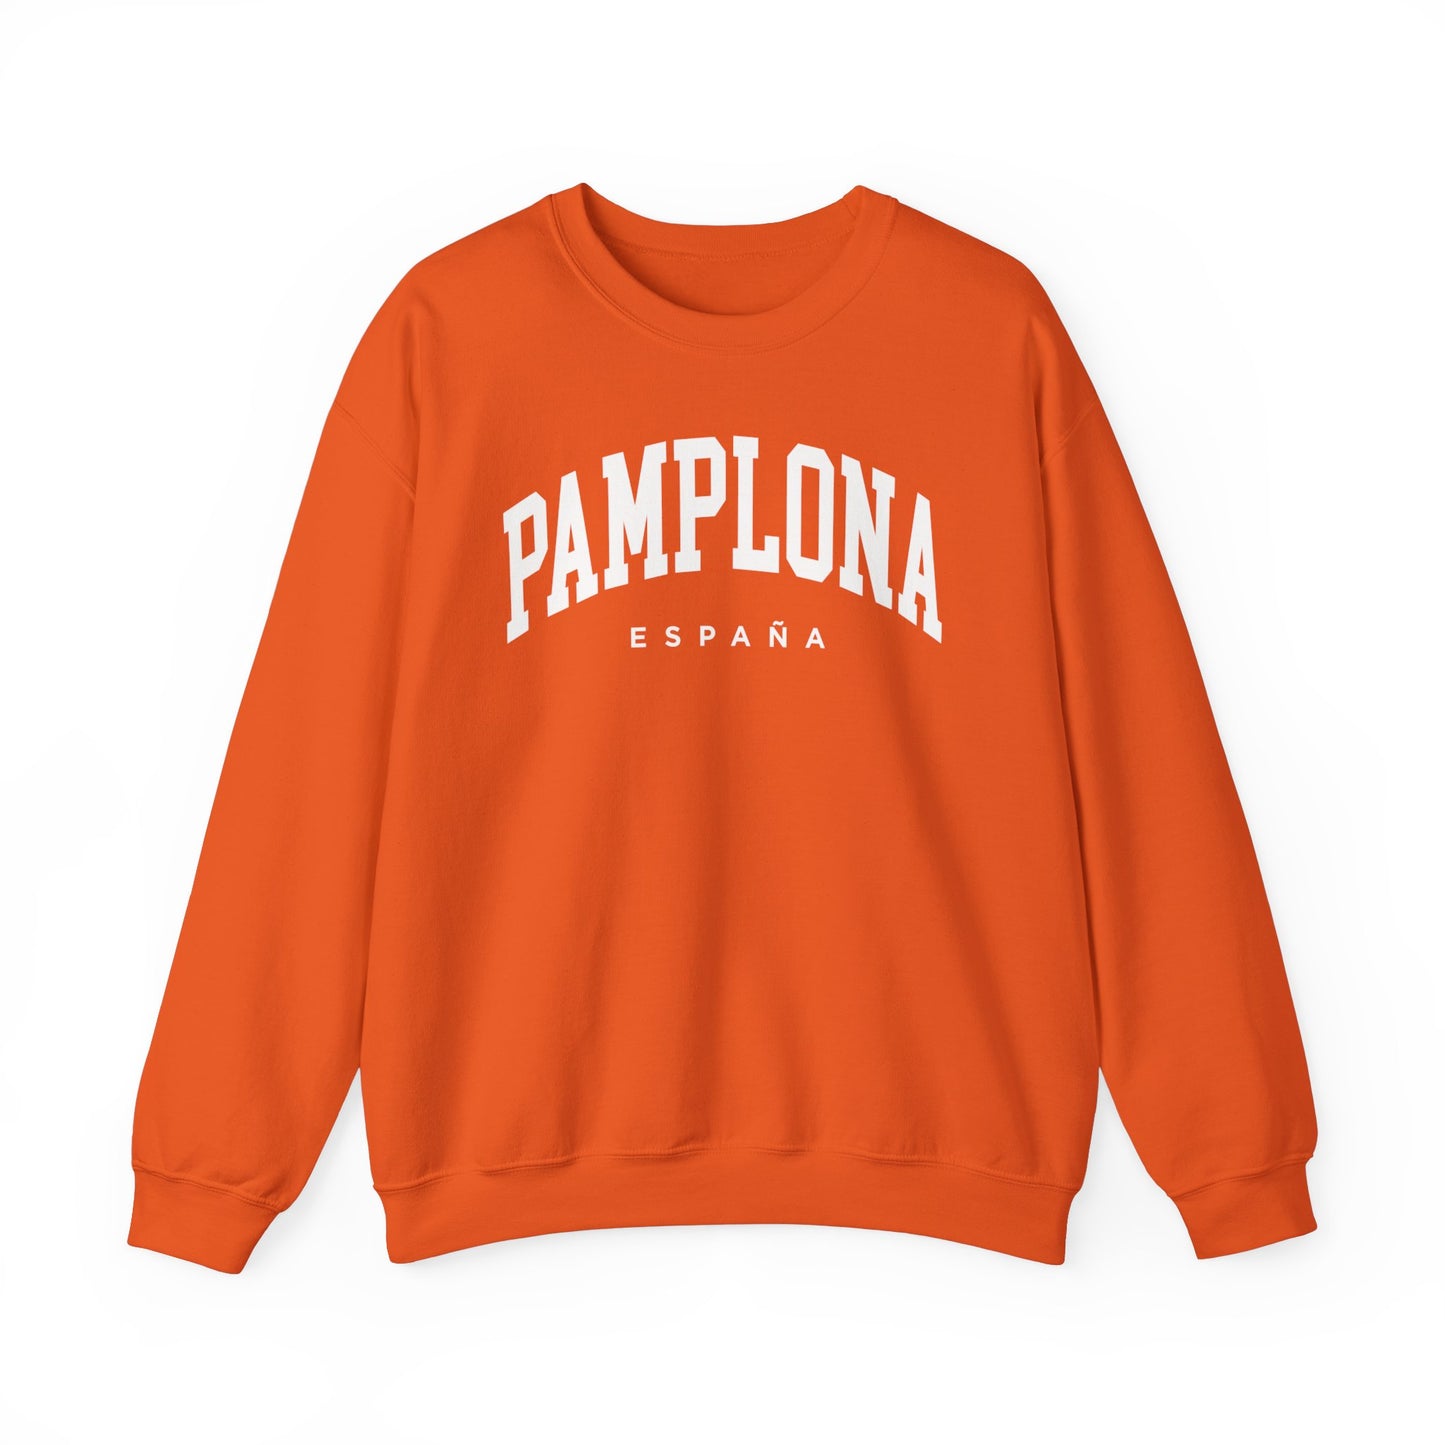 Pamplona Spain Sweatshirt